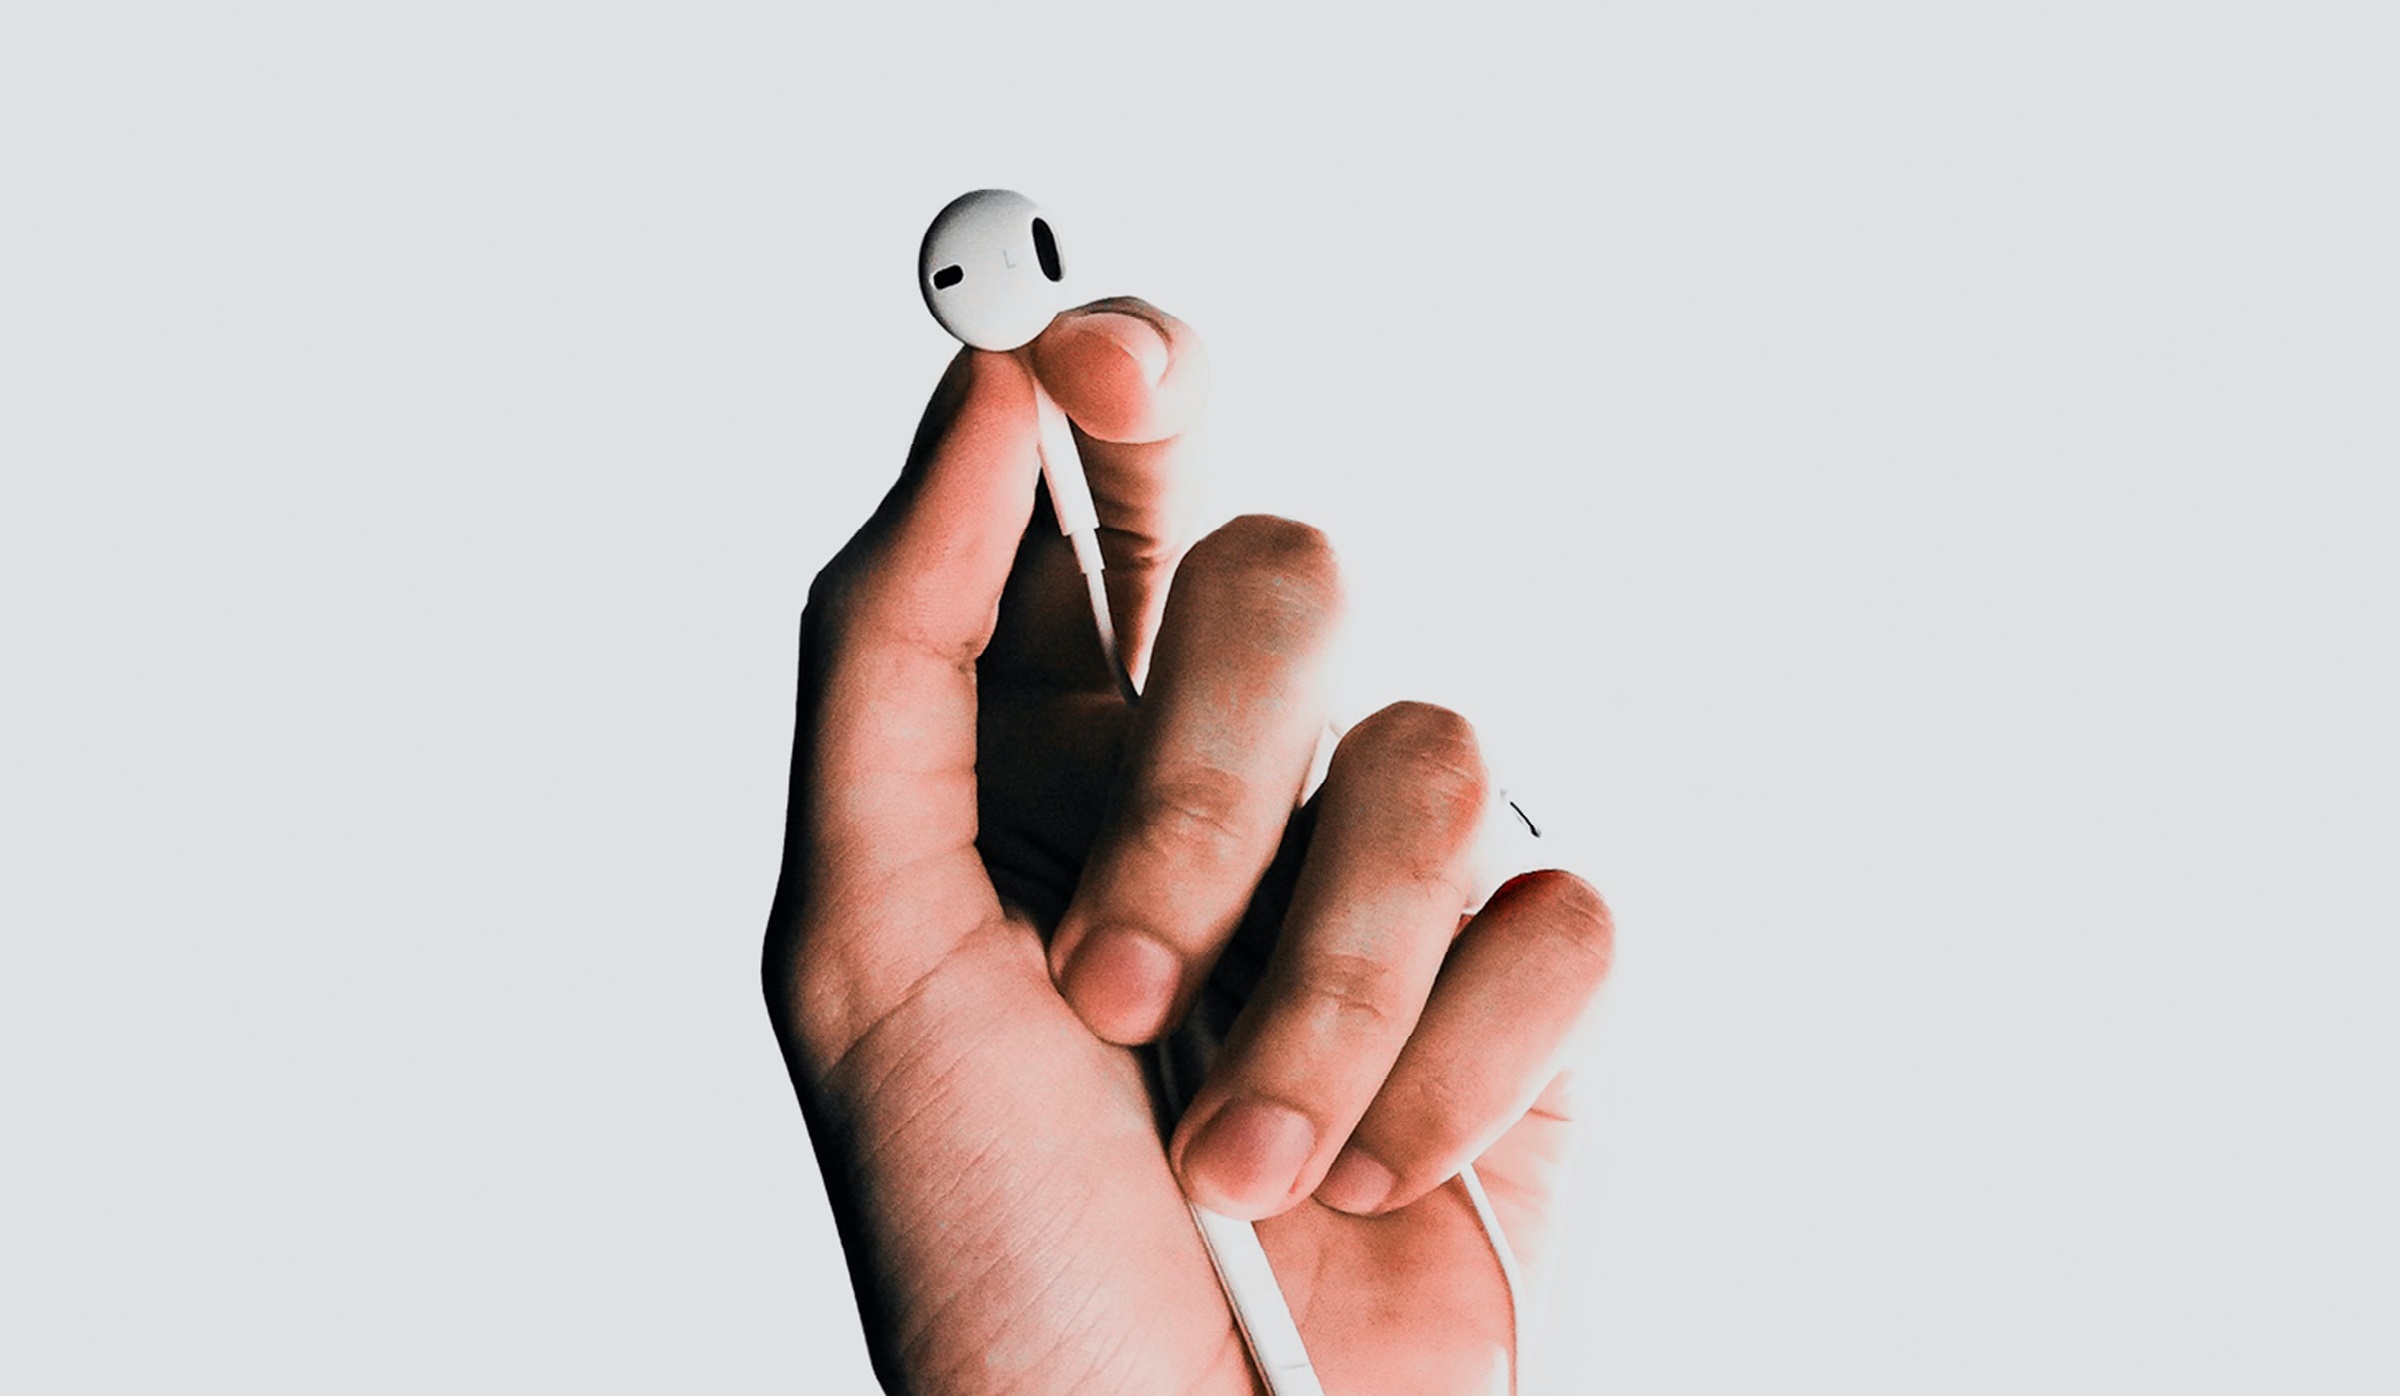 En persons hånd, der holder et æble-airpods, mens han nyder musikstreaming med bedre betalingsmuligheder.